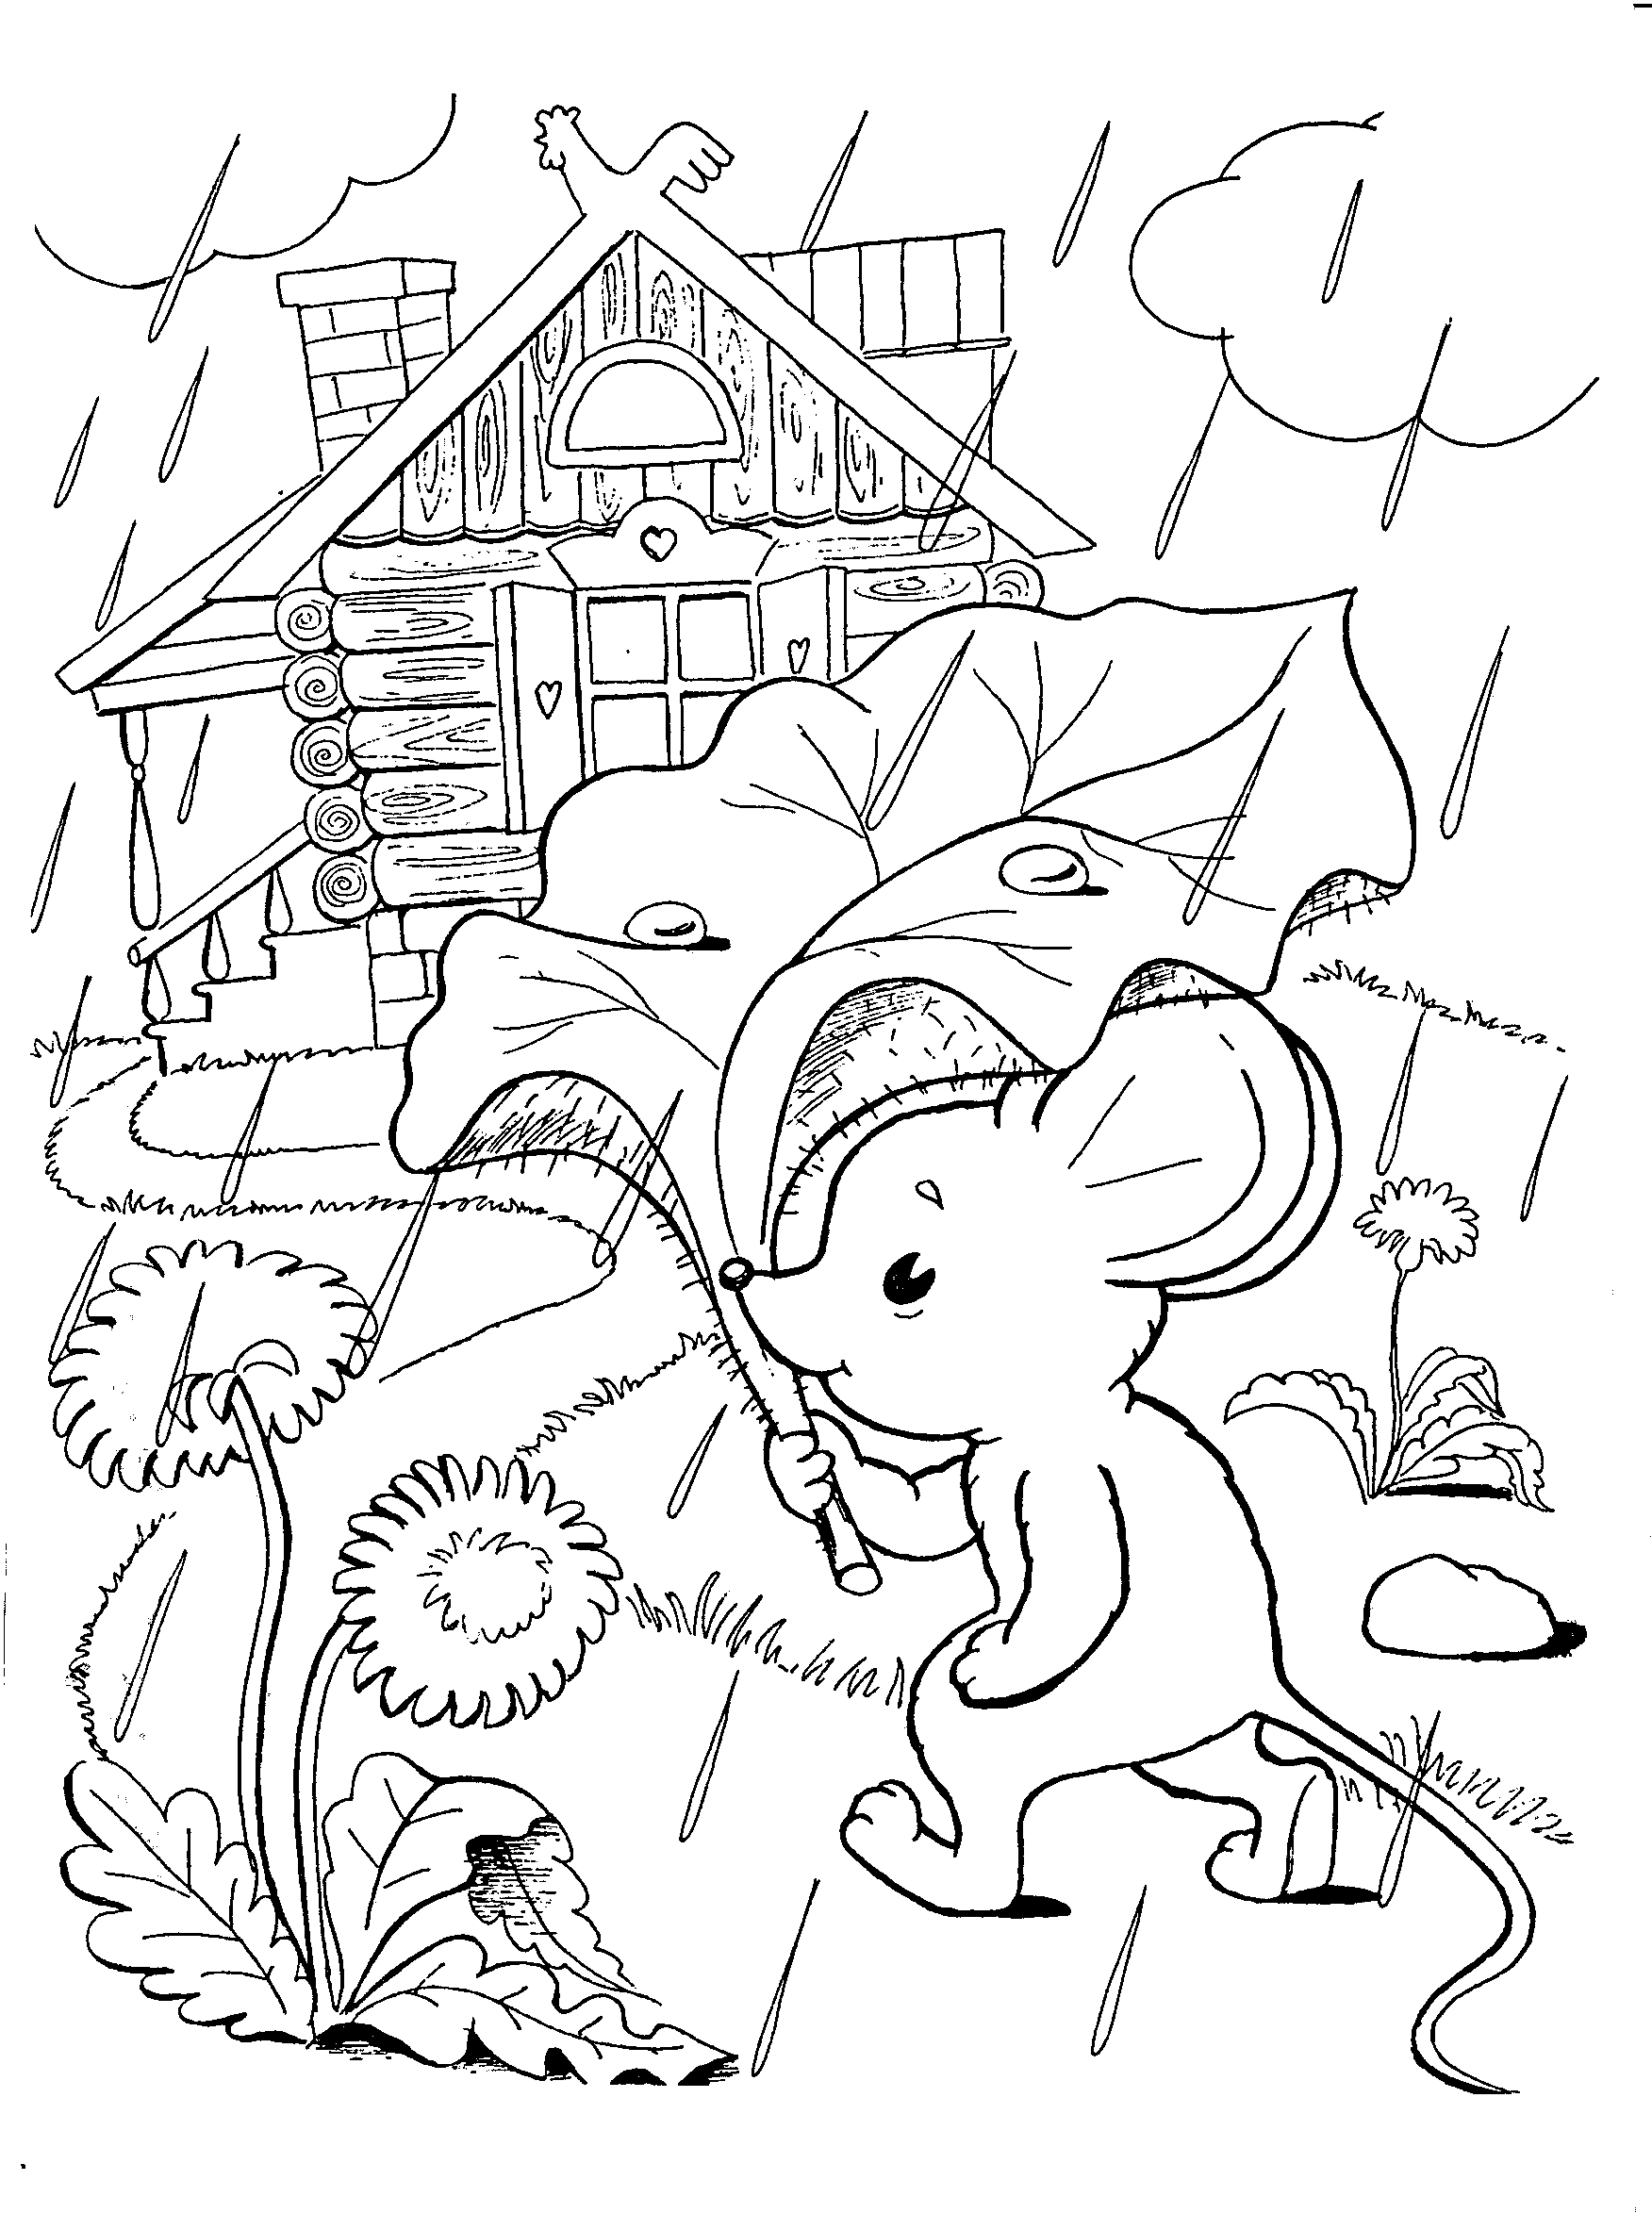 Розмальовки мишеня Мишеня йде до будиночка щоб не промокнути і над головою тримає листок від Лапухов